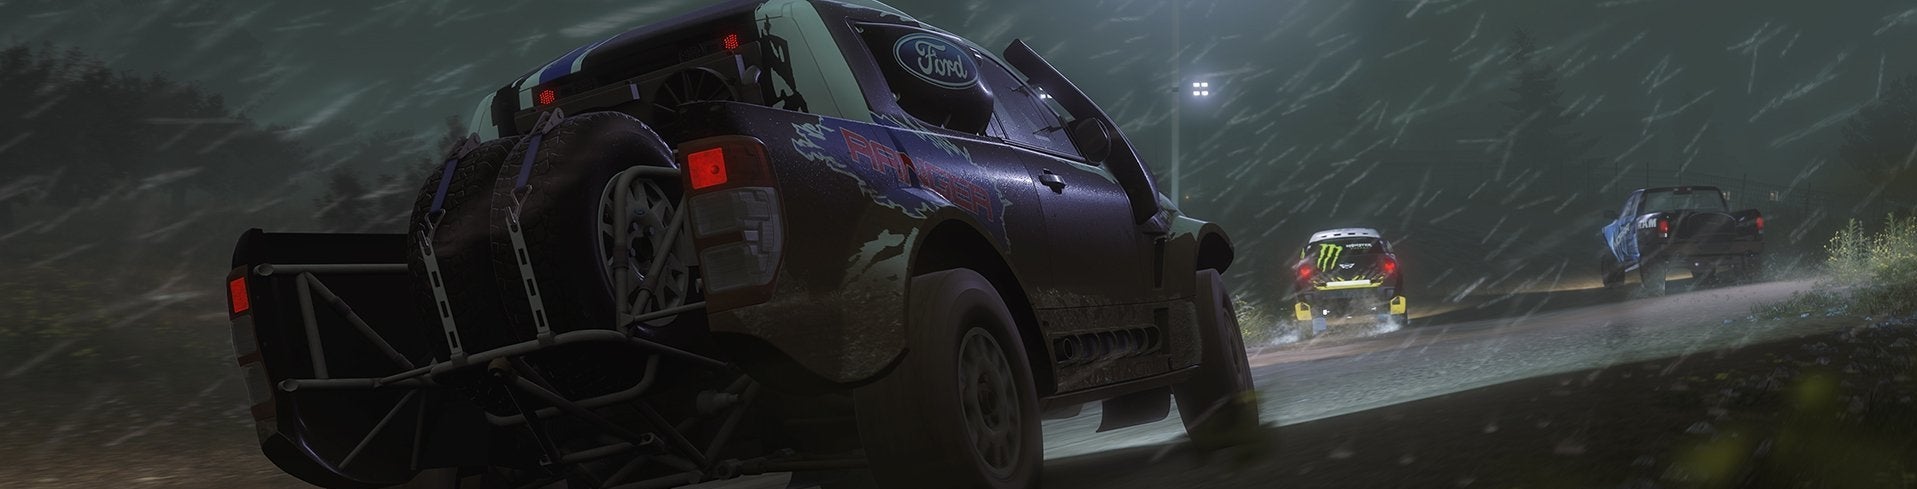 Immagine di Forza Horizon 2 Storm Island: piove, governo ladro! - review